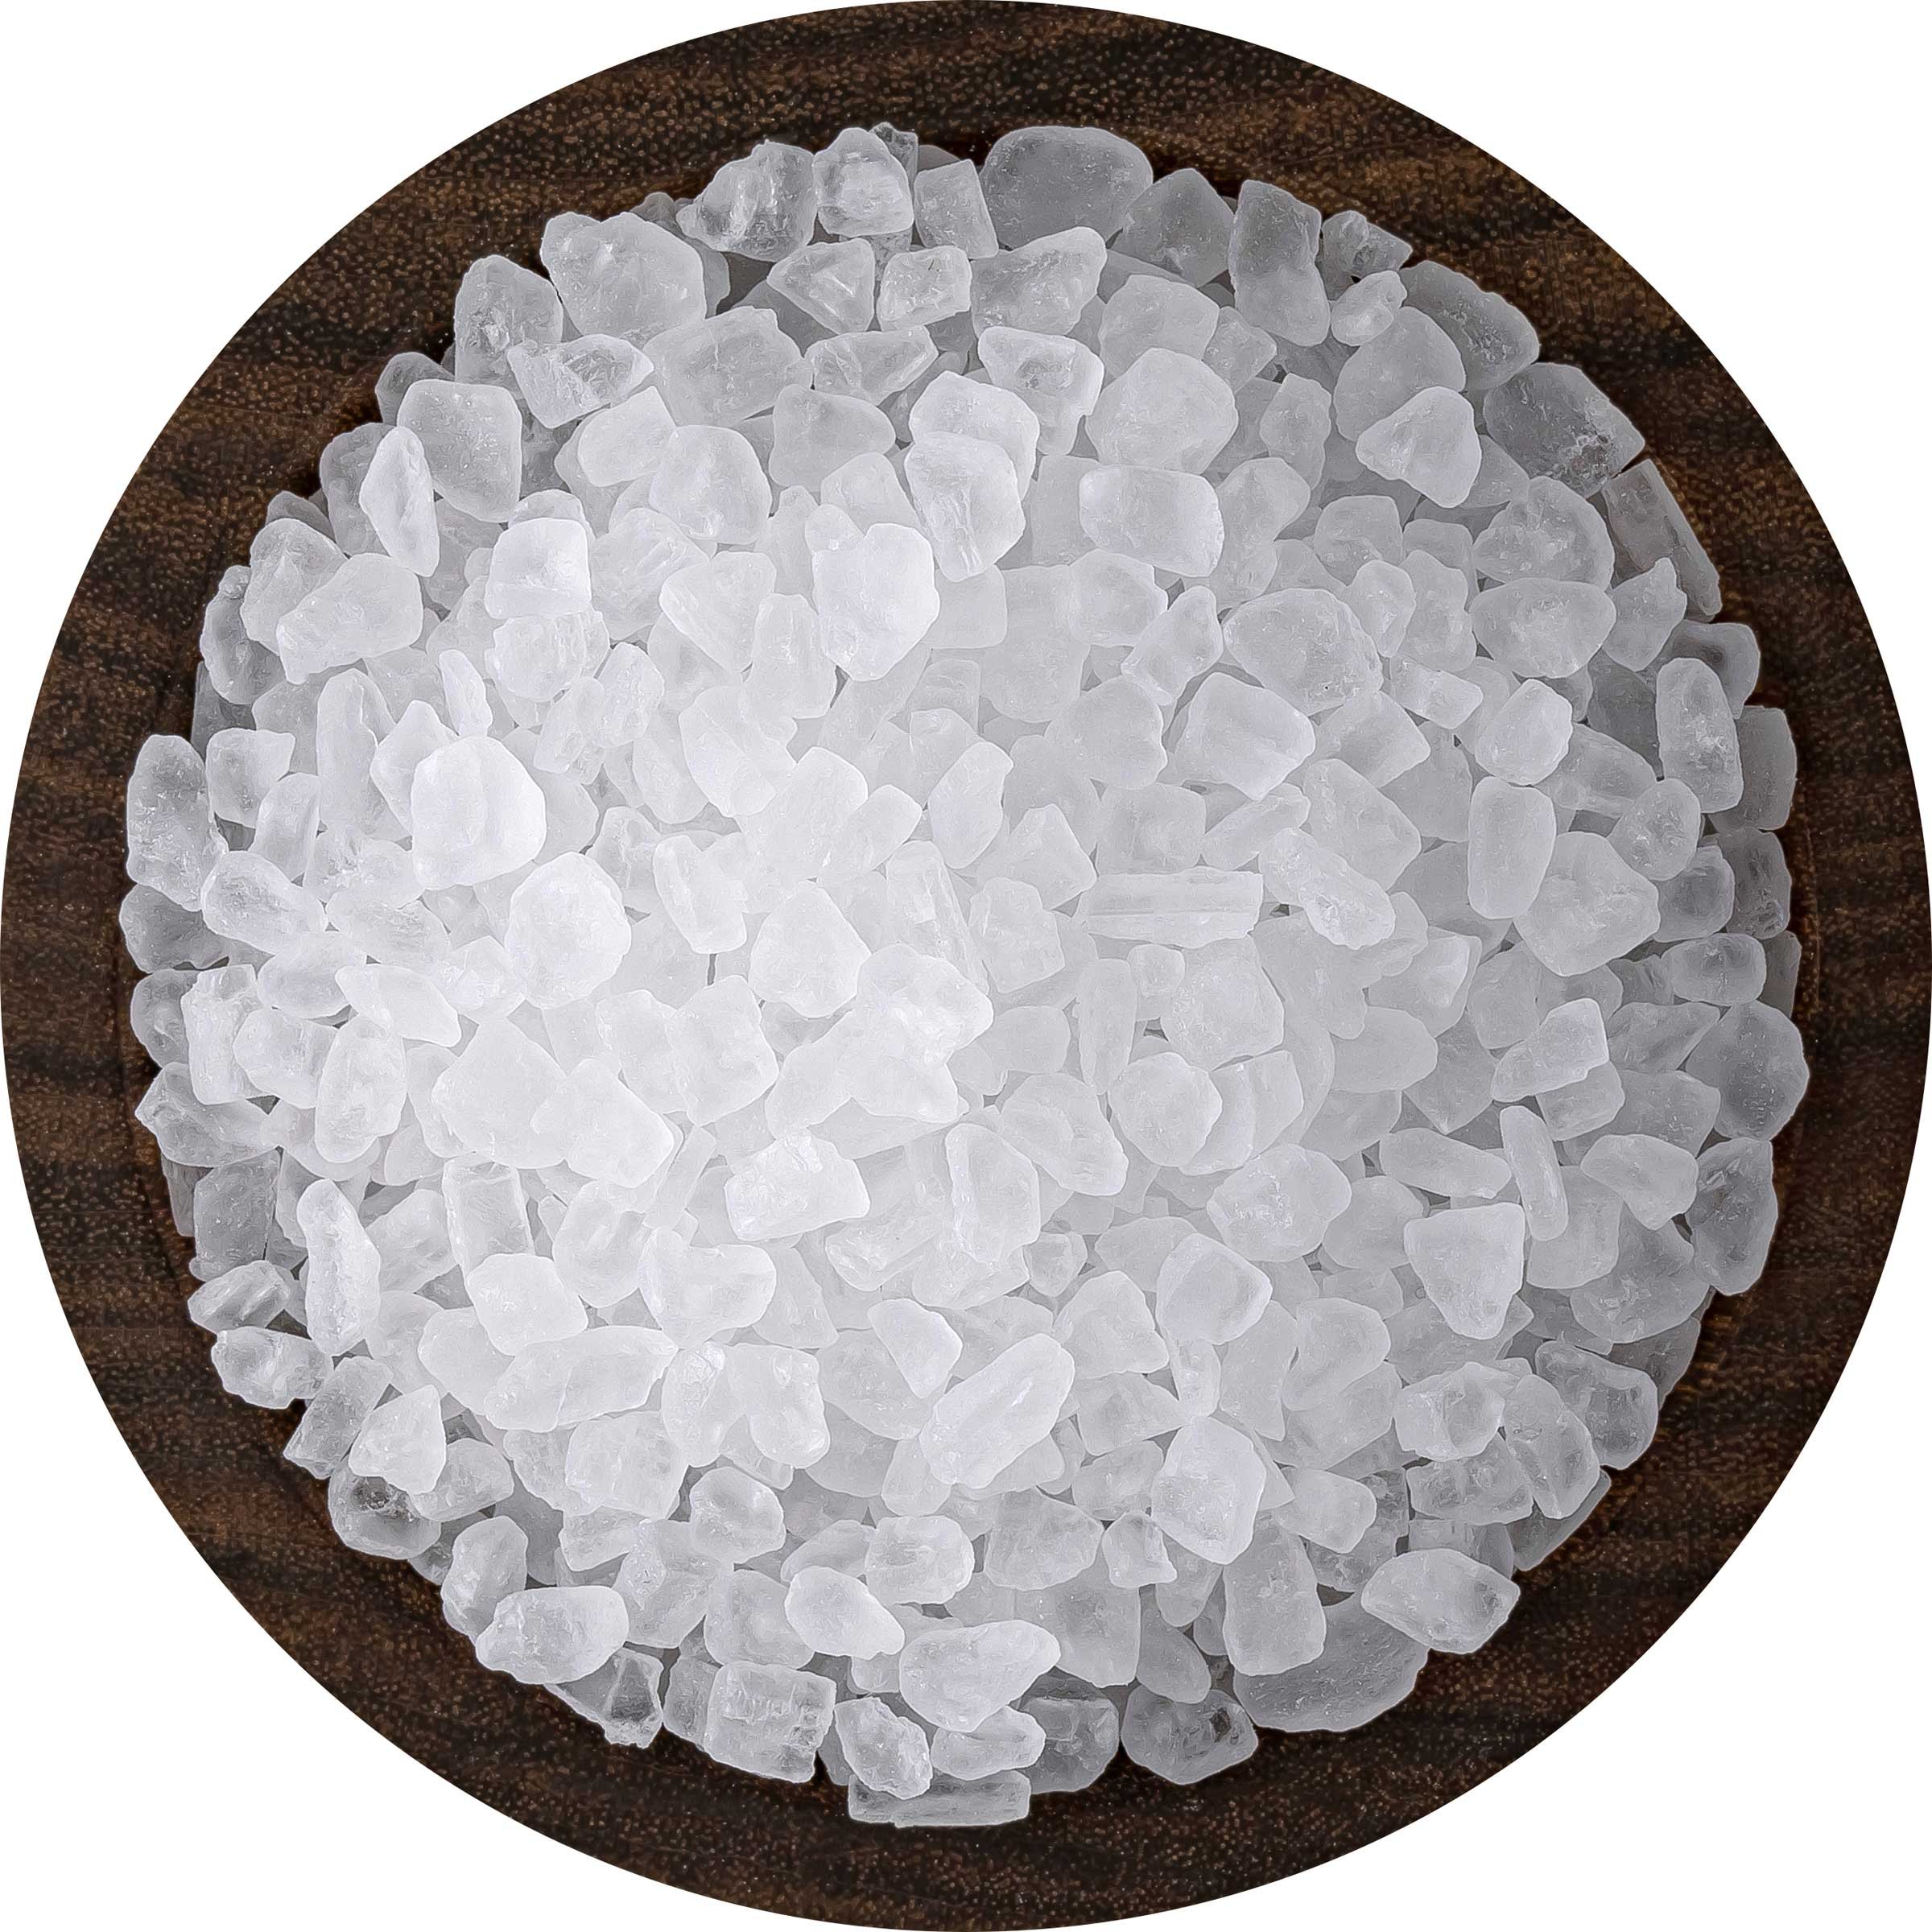 Pure Ocean Sea Salt Bulk Coarse Grain Lb Bag SaltWorks